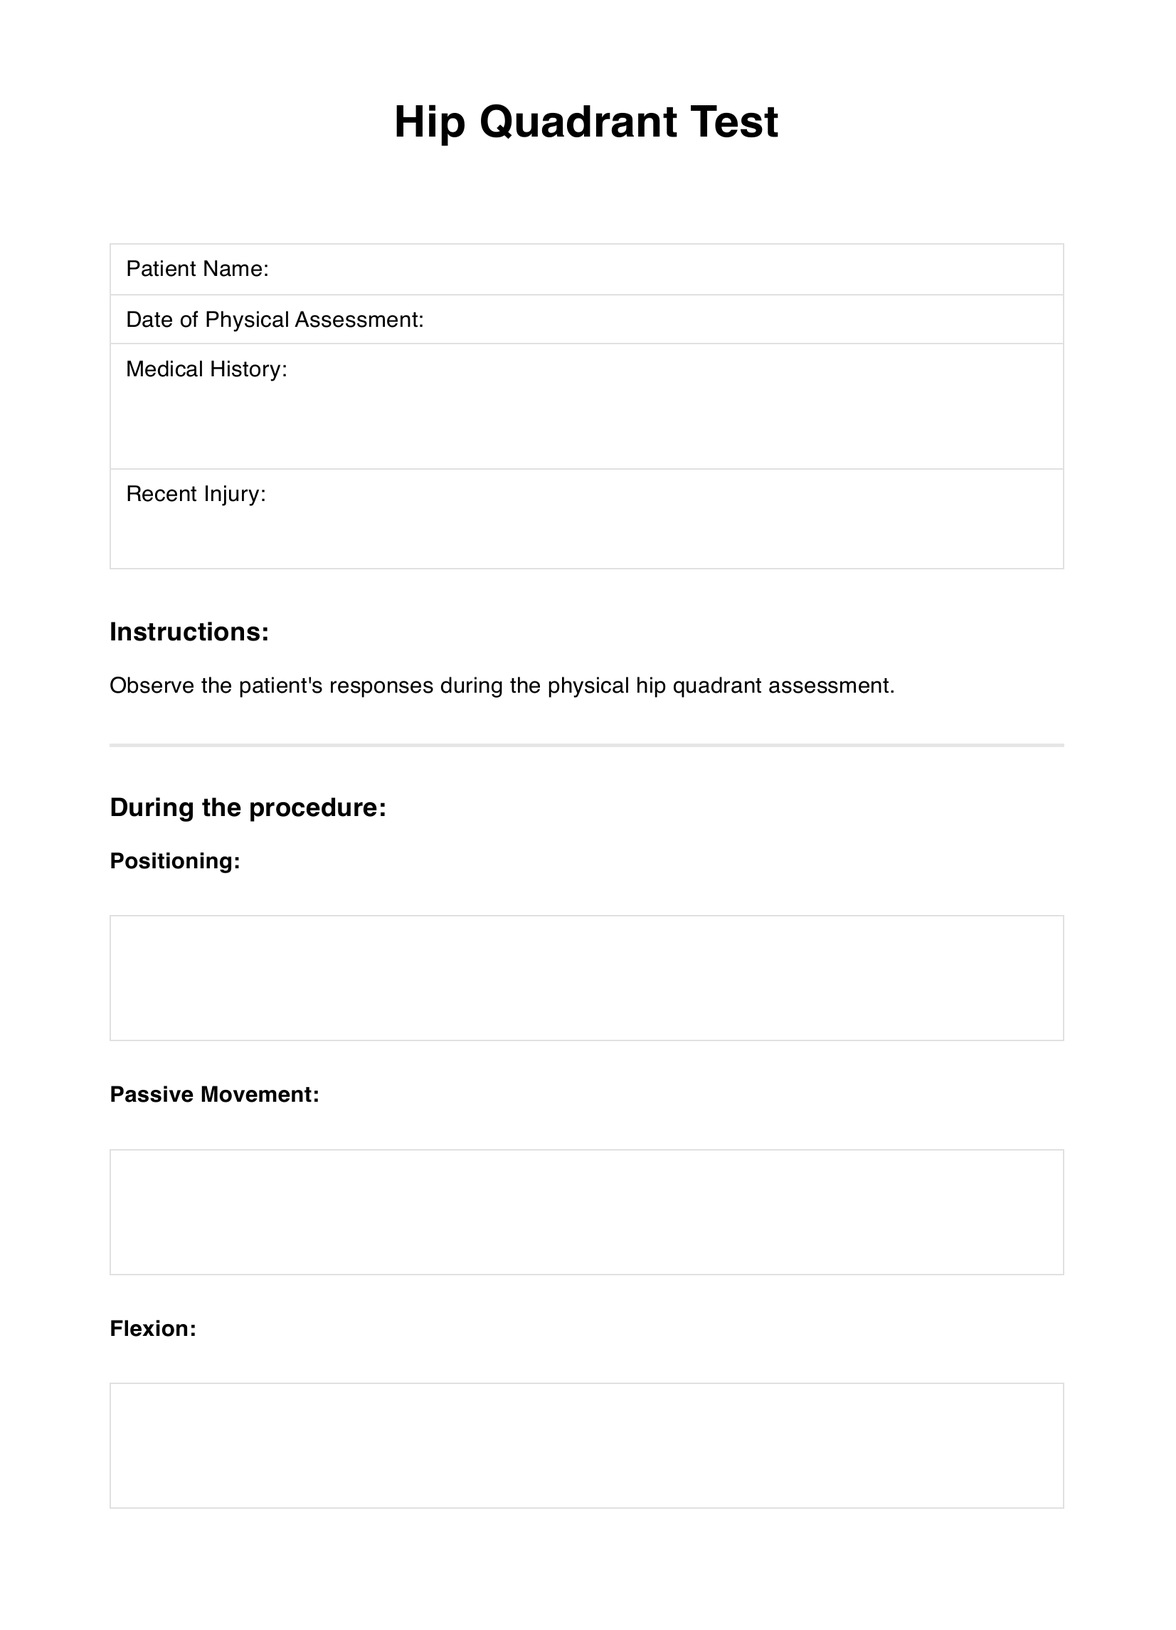 Hip Quadrant Test PDF Example